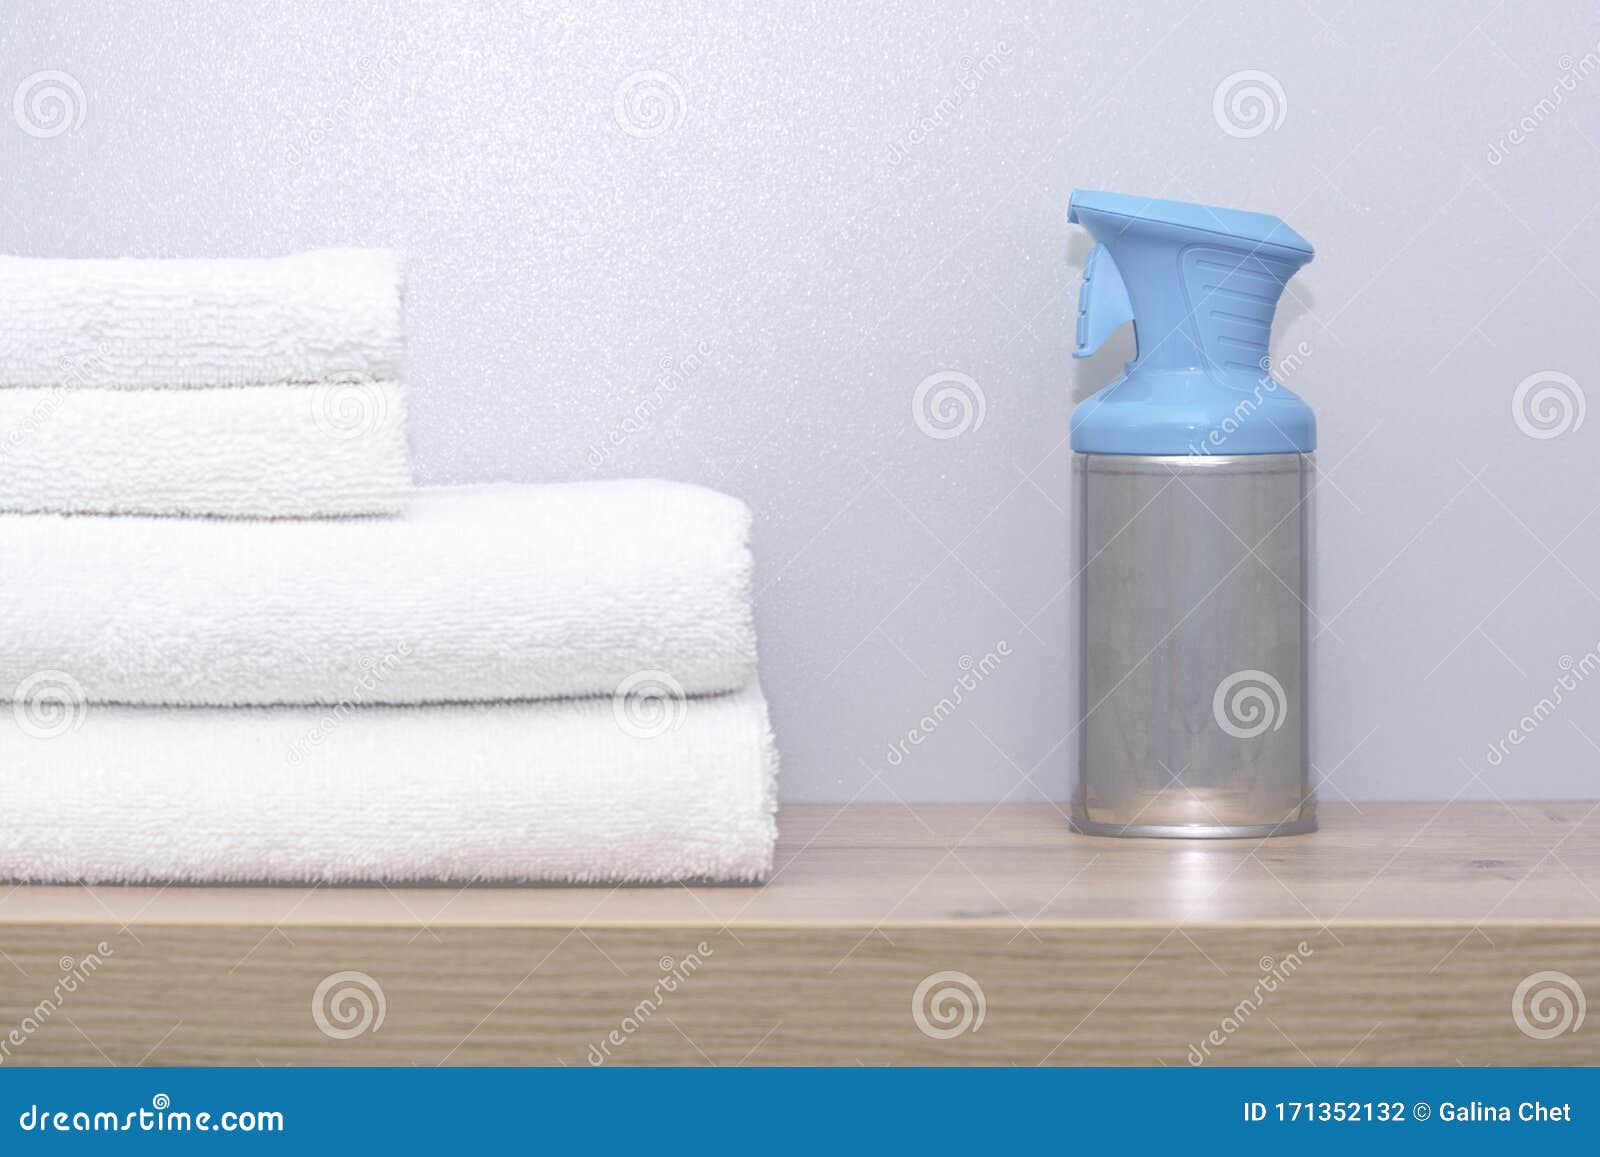 Secador toallas Blanco.